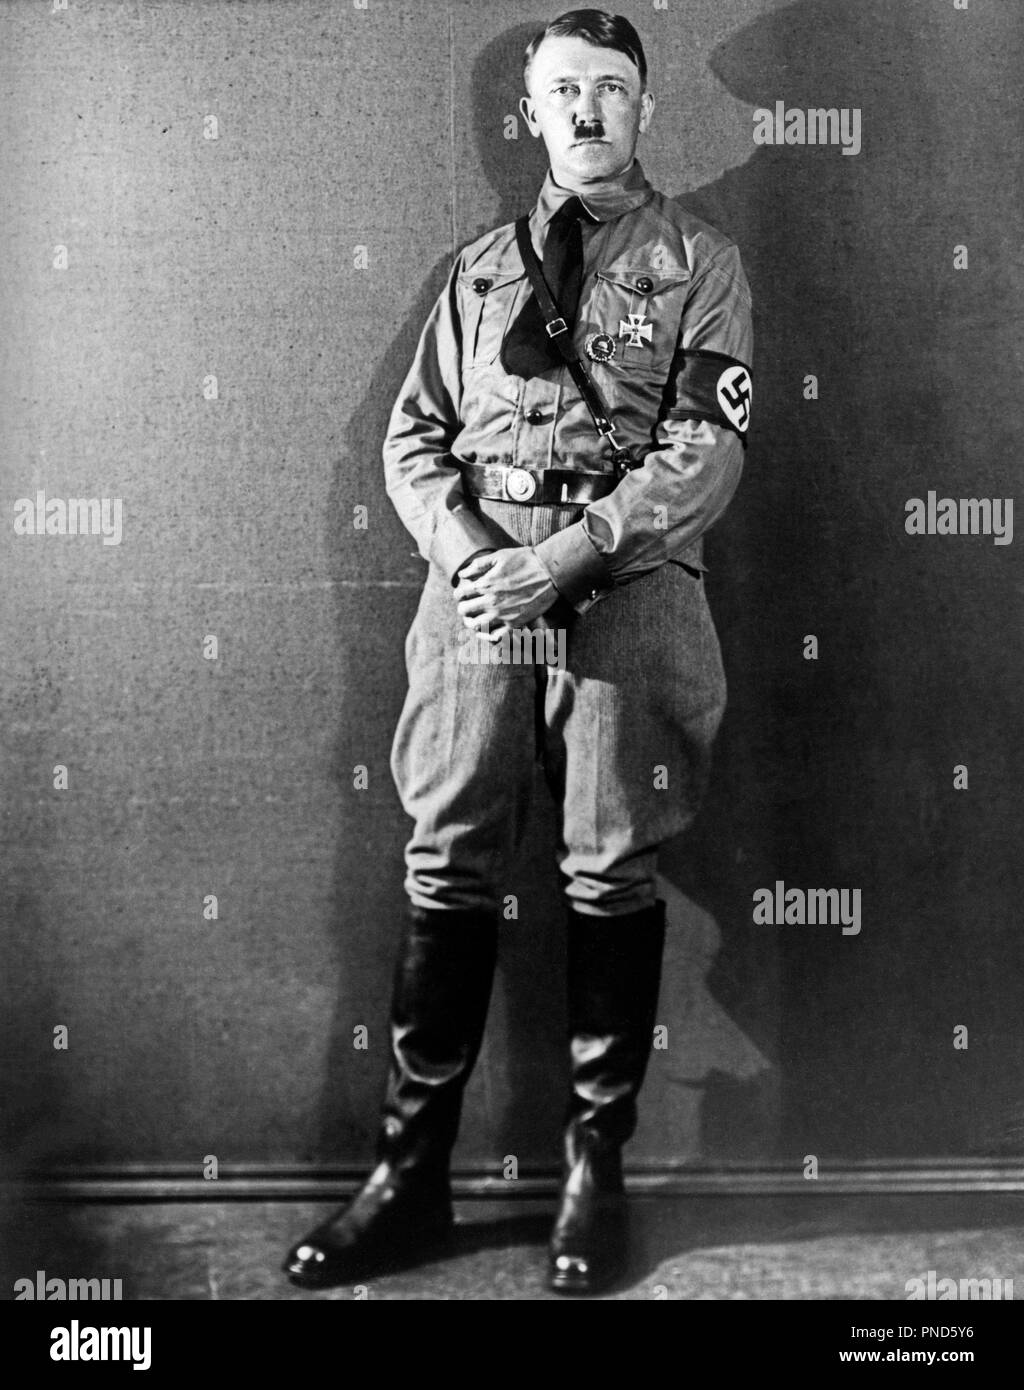 1920s 1930 figura intera in piedi ADOLF HITLER Der Führer indossando MAGLIETTA MARRONE UNIFORME CON SVASTICA FASCIA BRACCIO GUARDANDO TELECAMERA - Q72075 CPC001 HARS personalità famose LEADERSHIP MONSTER WORLD WAR II DITTATORE SWASTIKA LA POLITICA ADOLF DER infame assassino fascista nazista ADOLF HITLER CONFLITTI DER FÜHRER FÜHRER GENOCIDIO MID-adulto metà uomo adulto assassinio di personalità suicidio combattendo in bianco e nero di etnia caucasica persona famosa in vecchio stile Foto Stock